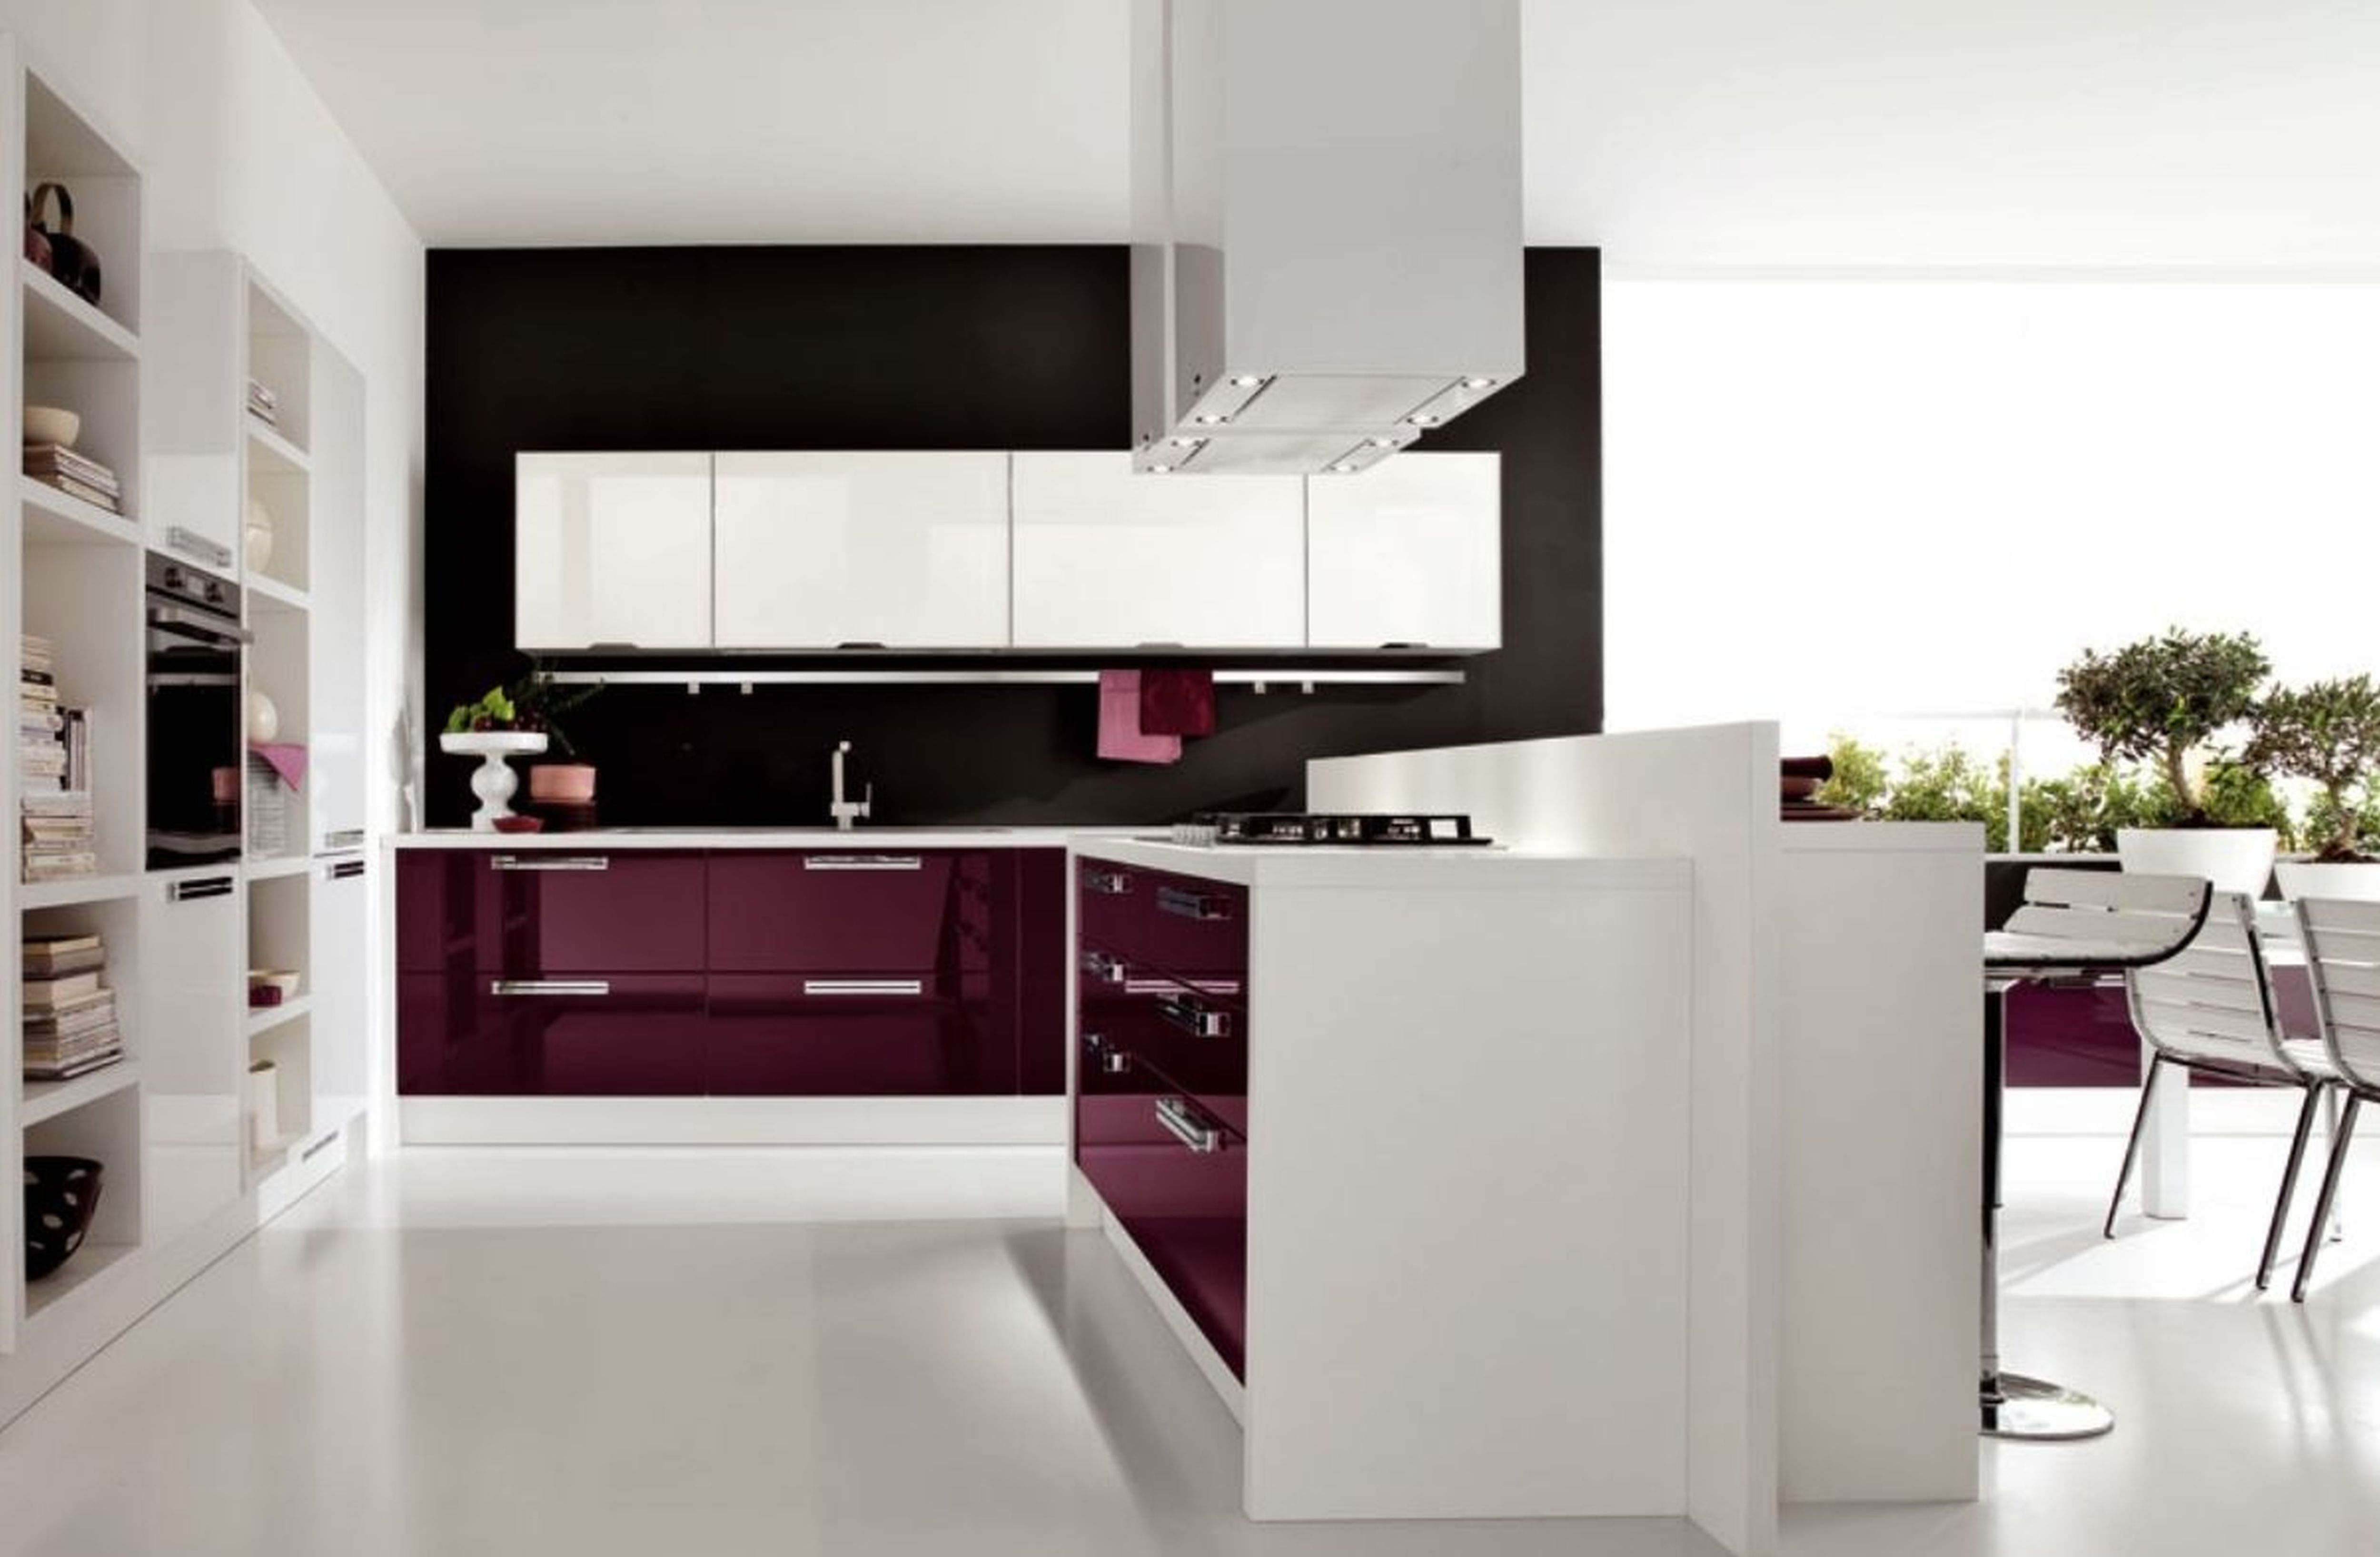 modern kitchen wallpaper designs,furniture,room,kitchen,cabinetry,interior design